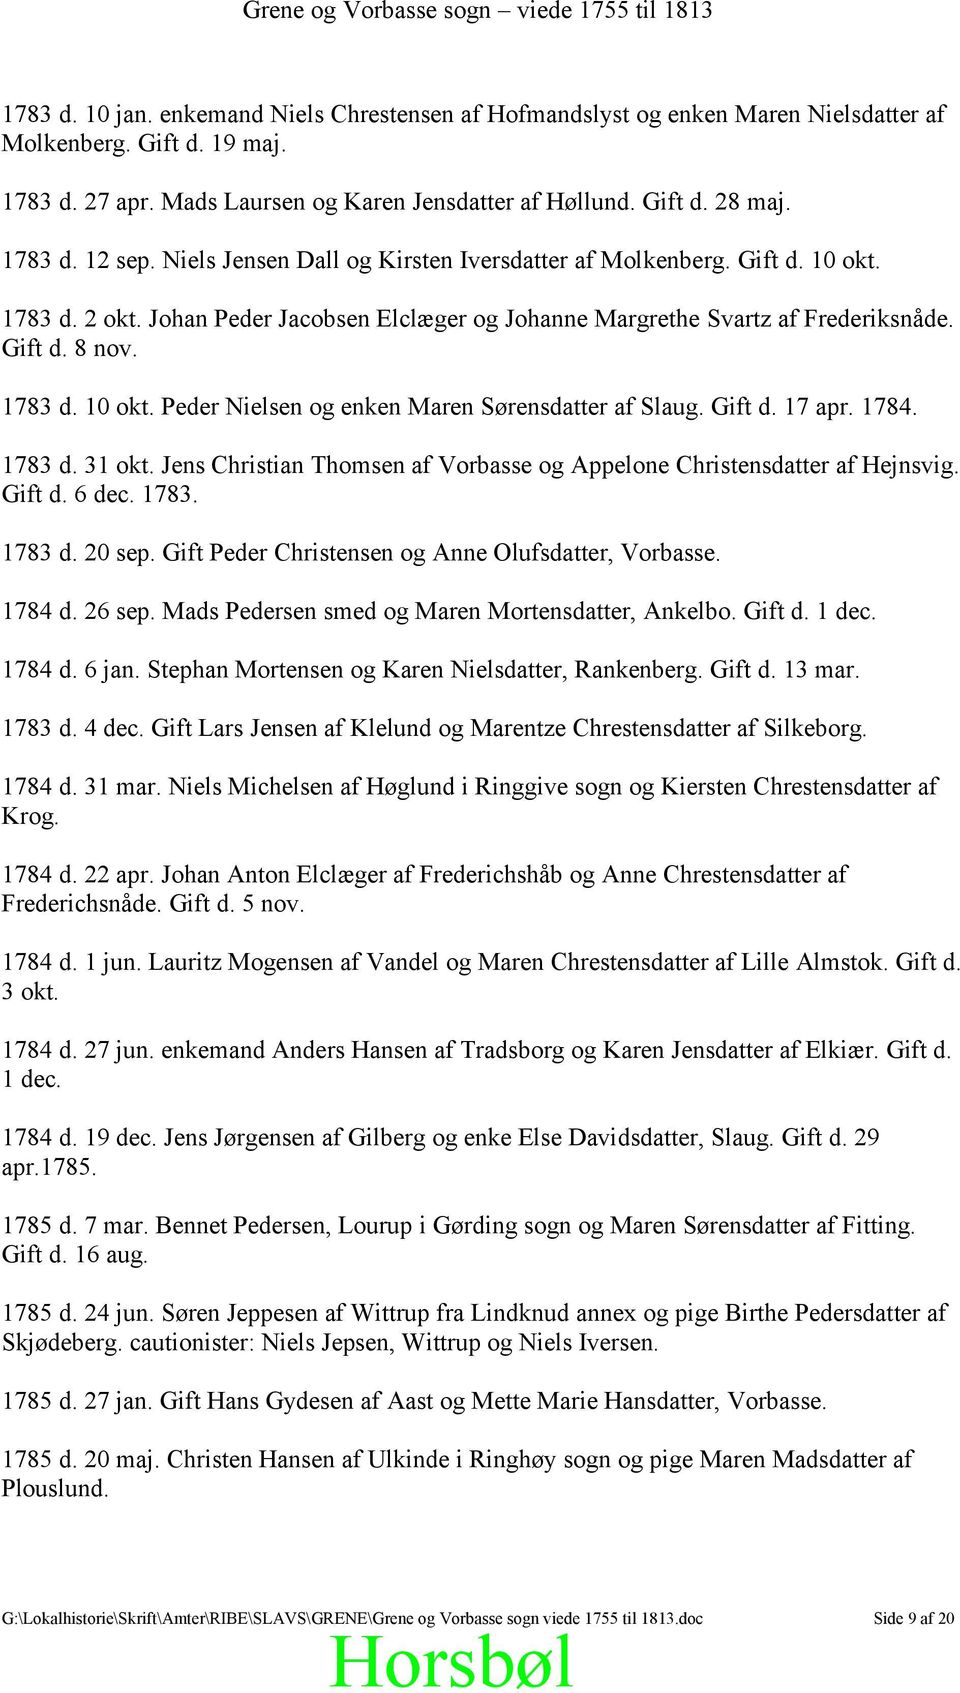 Grene Vorbasse sogn viede 1755 til Afskrift efter kopi af Vorbasse-Grene hovedkirkebog Trolovede og viede. - PDF Gratis download